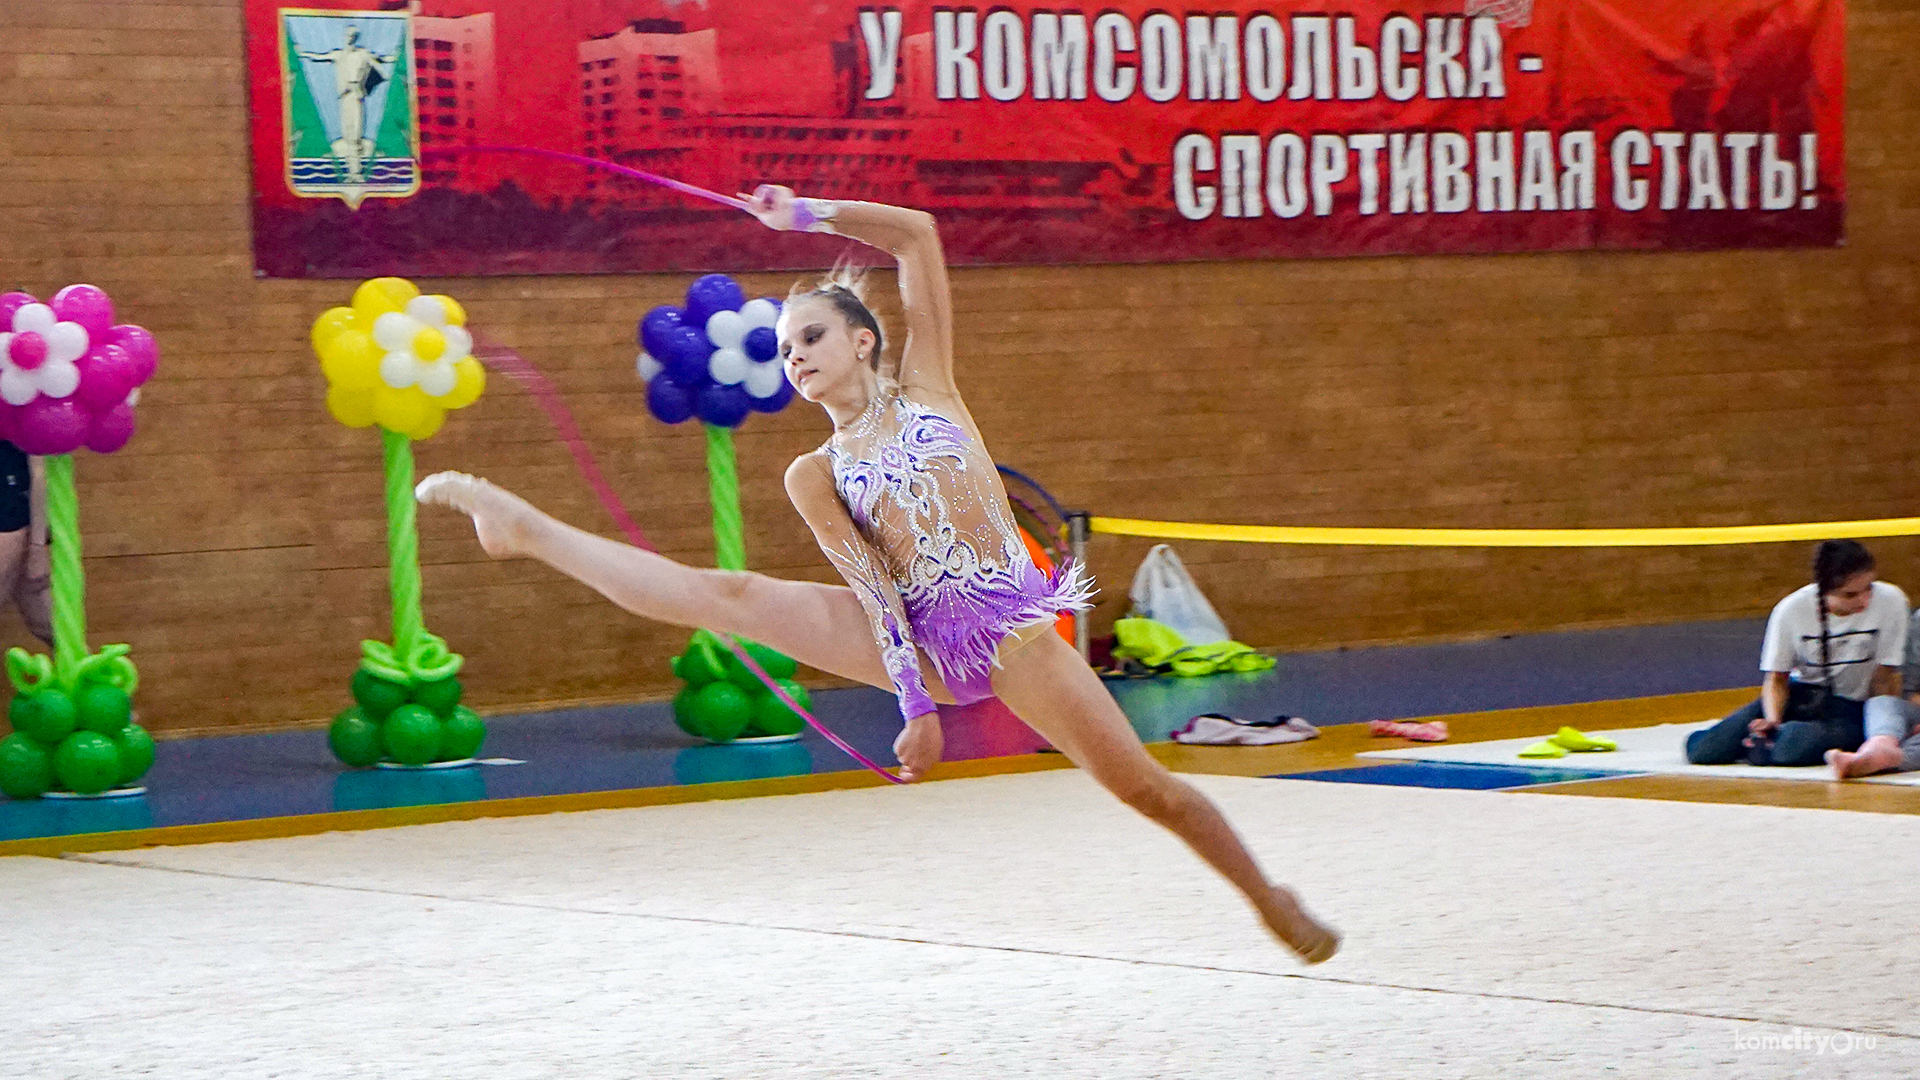 Турнир по художественной гимнастике «Грация» стартовал в Комсомольске-на-Амуре